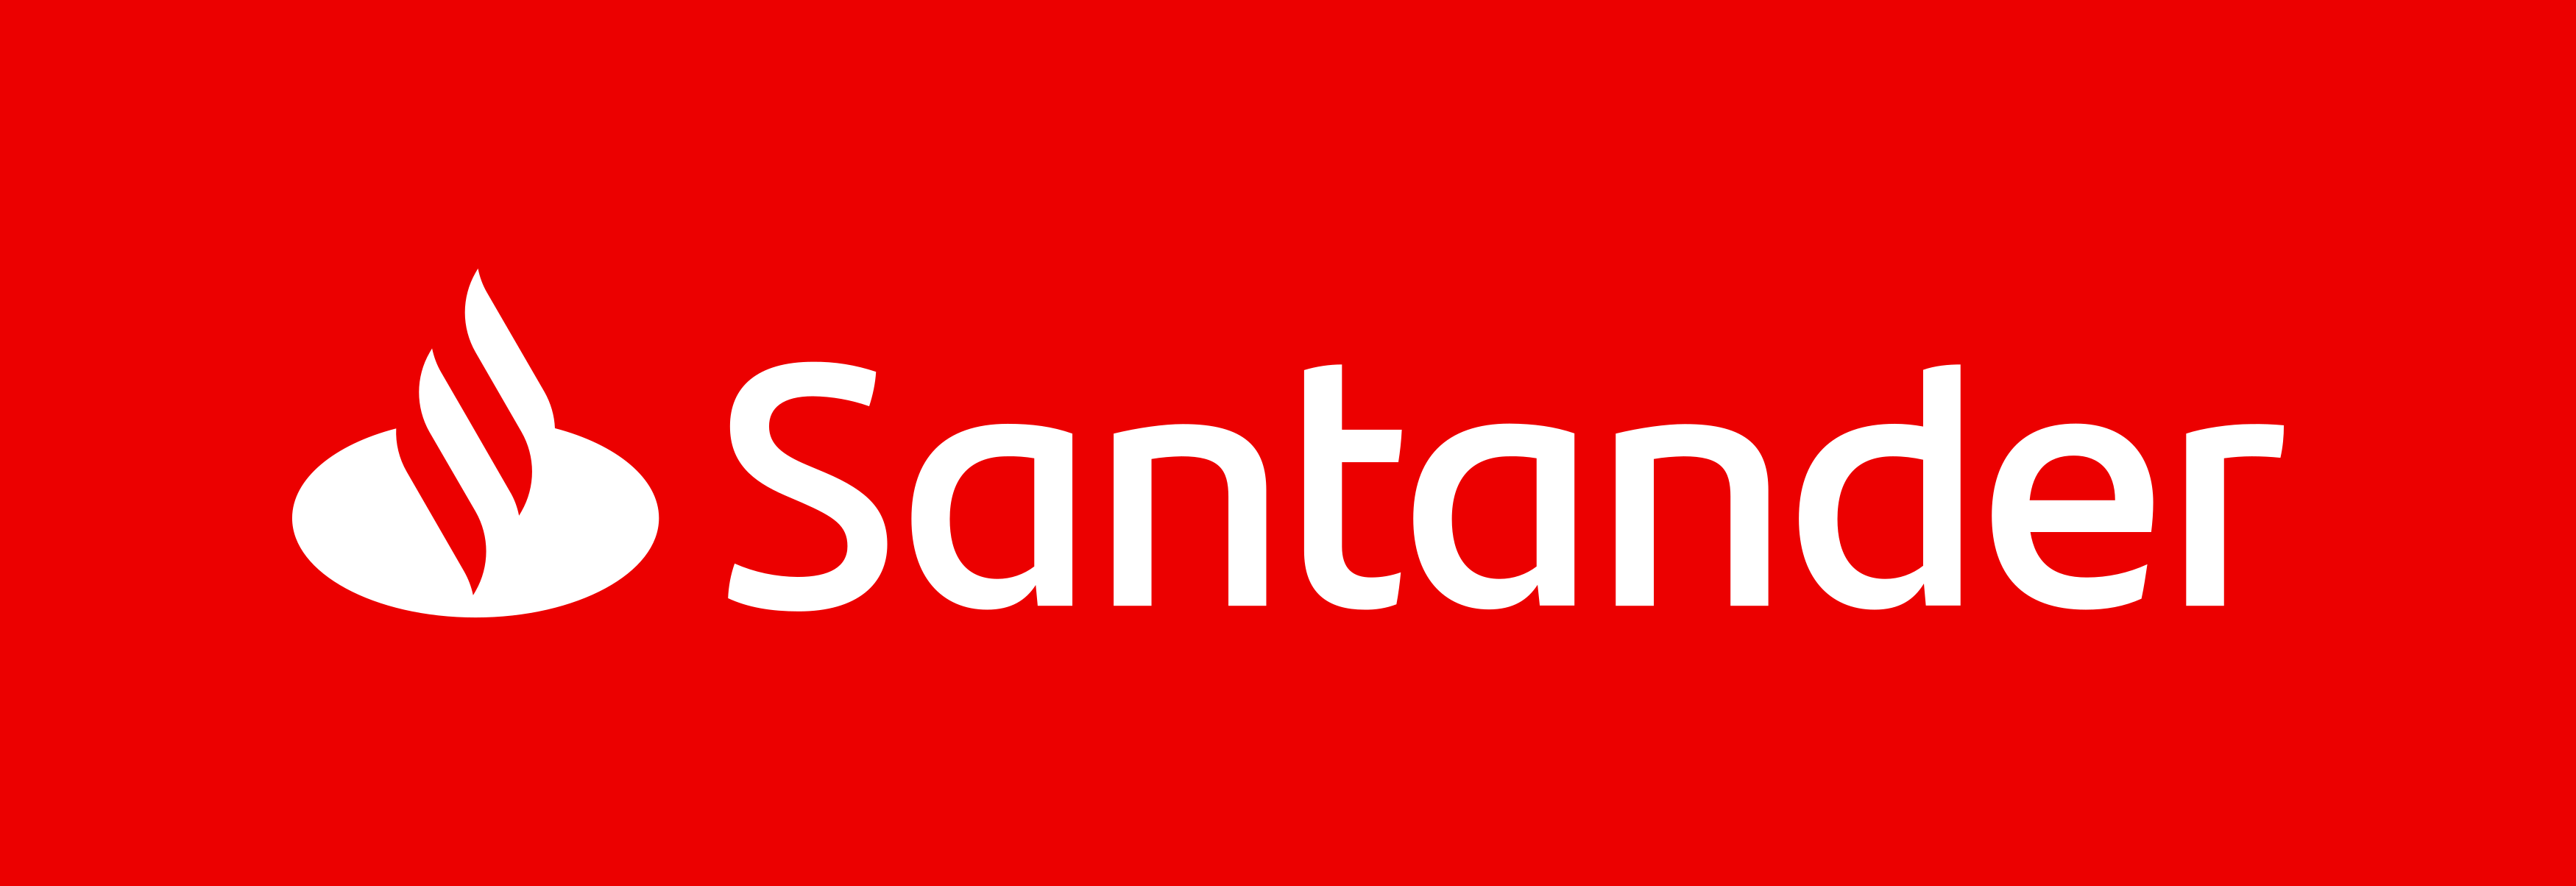 Consórcio Santander oferece condições acessíveis para você adquirir seu imóvel novo. Fonte: Santander.